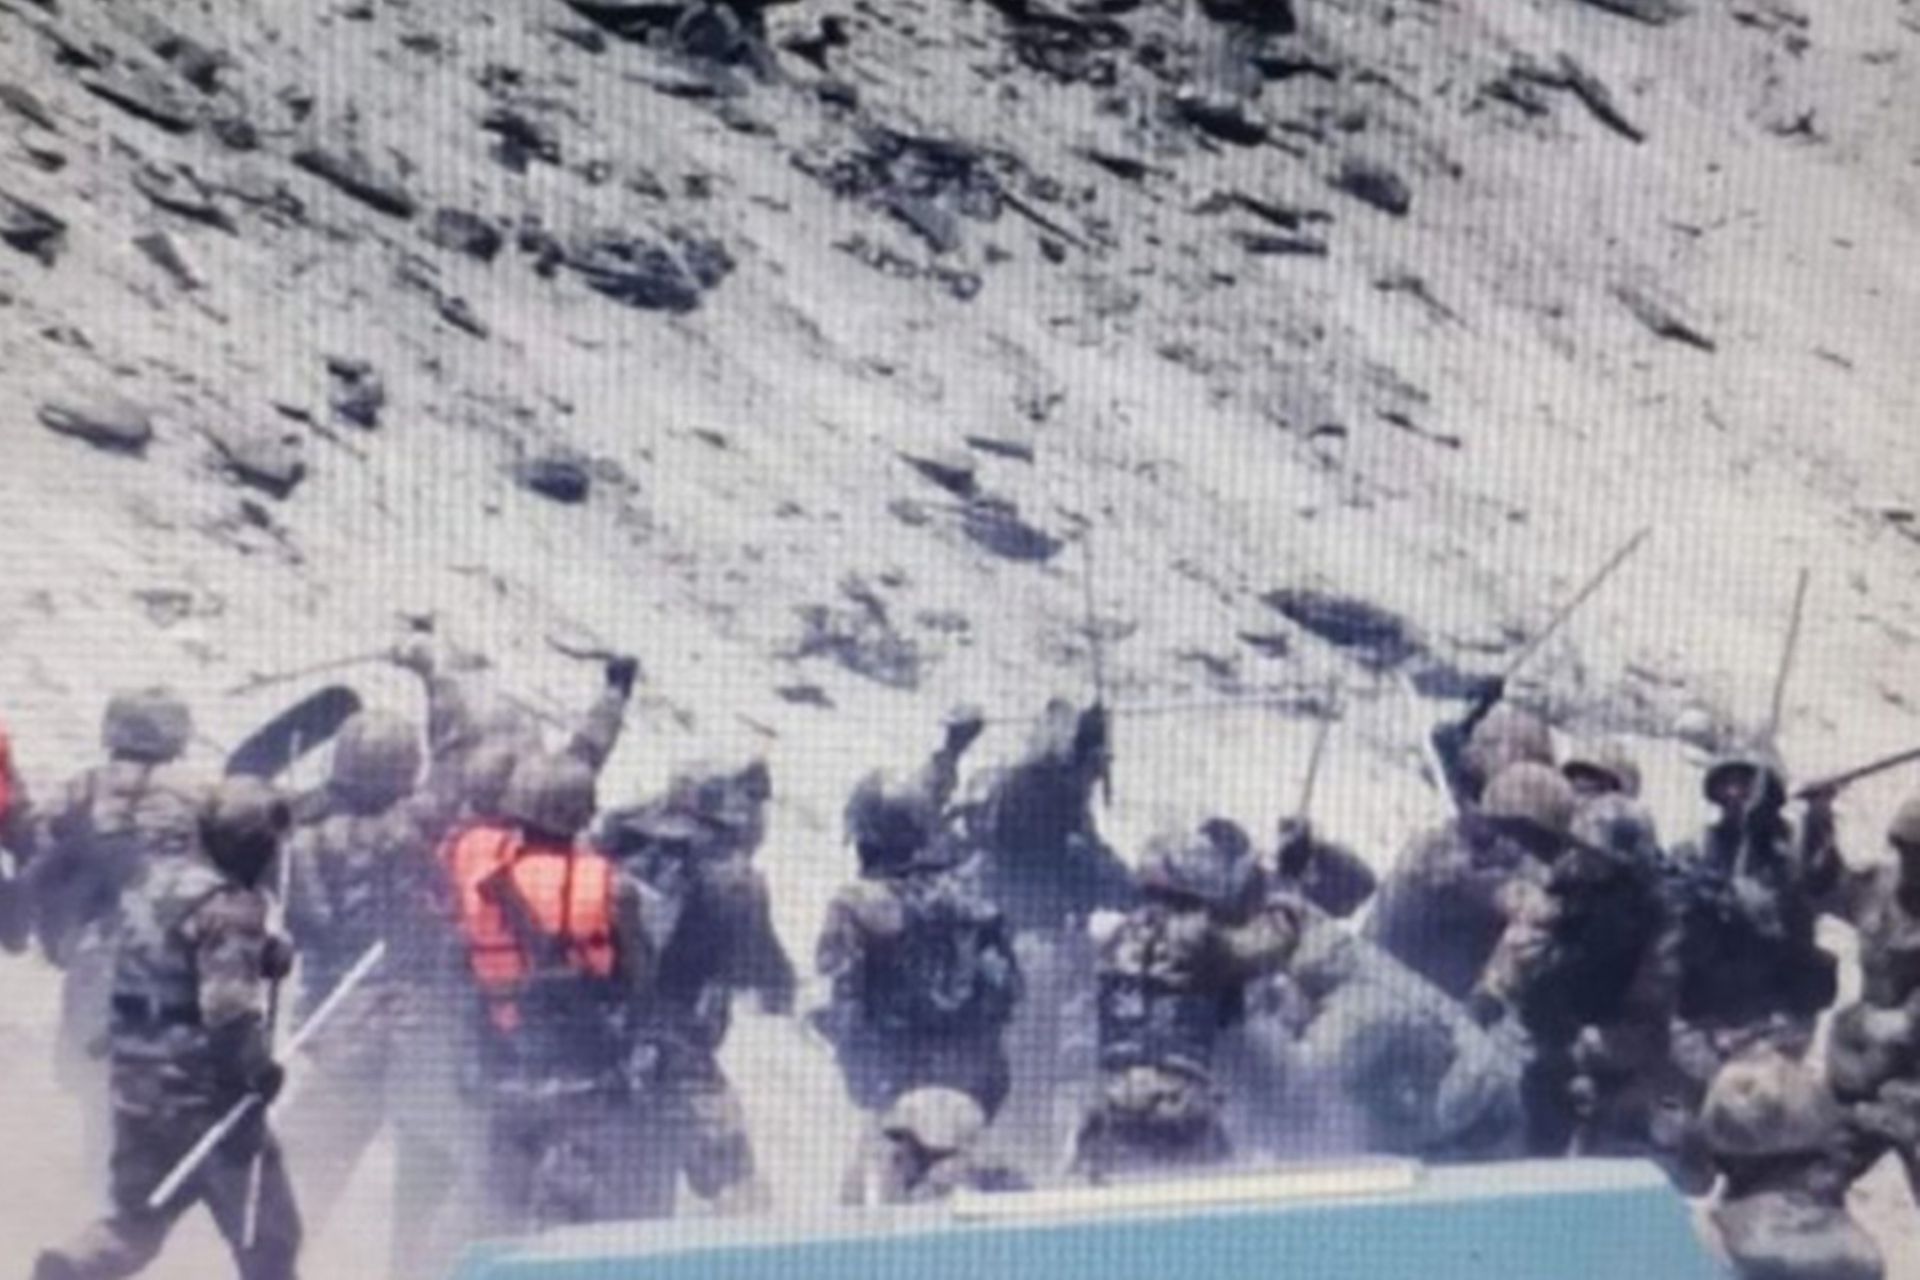 解放军士兵在班公湖地区群殴印军士兵。（微博@洋务先驱张之洞）